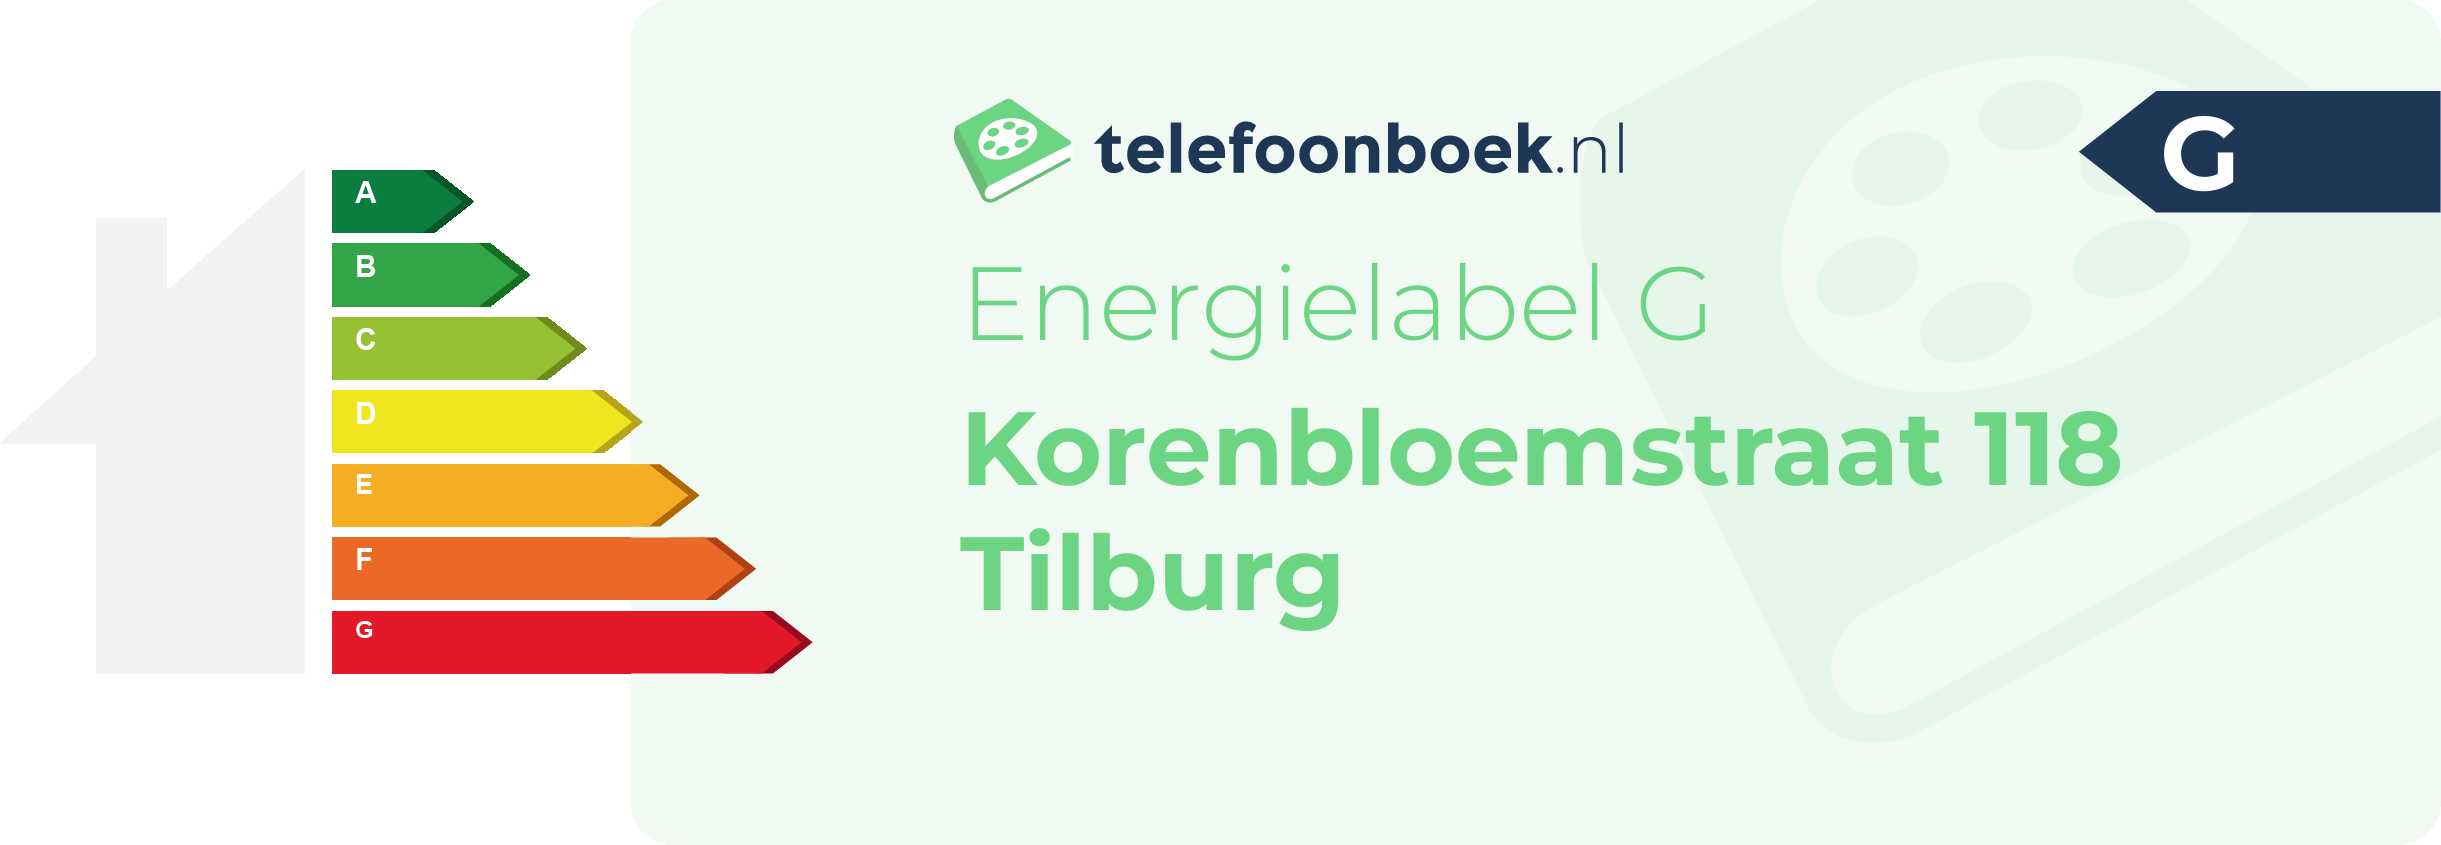 Energielabel Korenbloemstraat 118 Tilburg